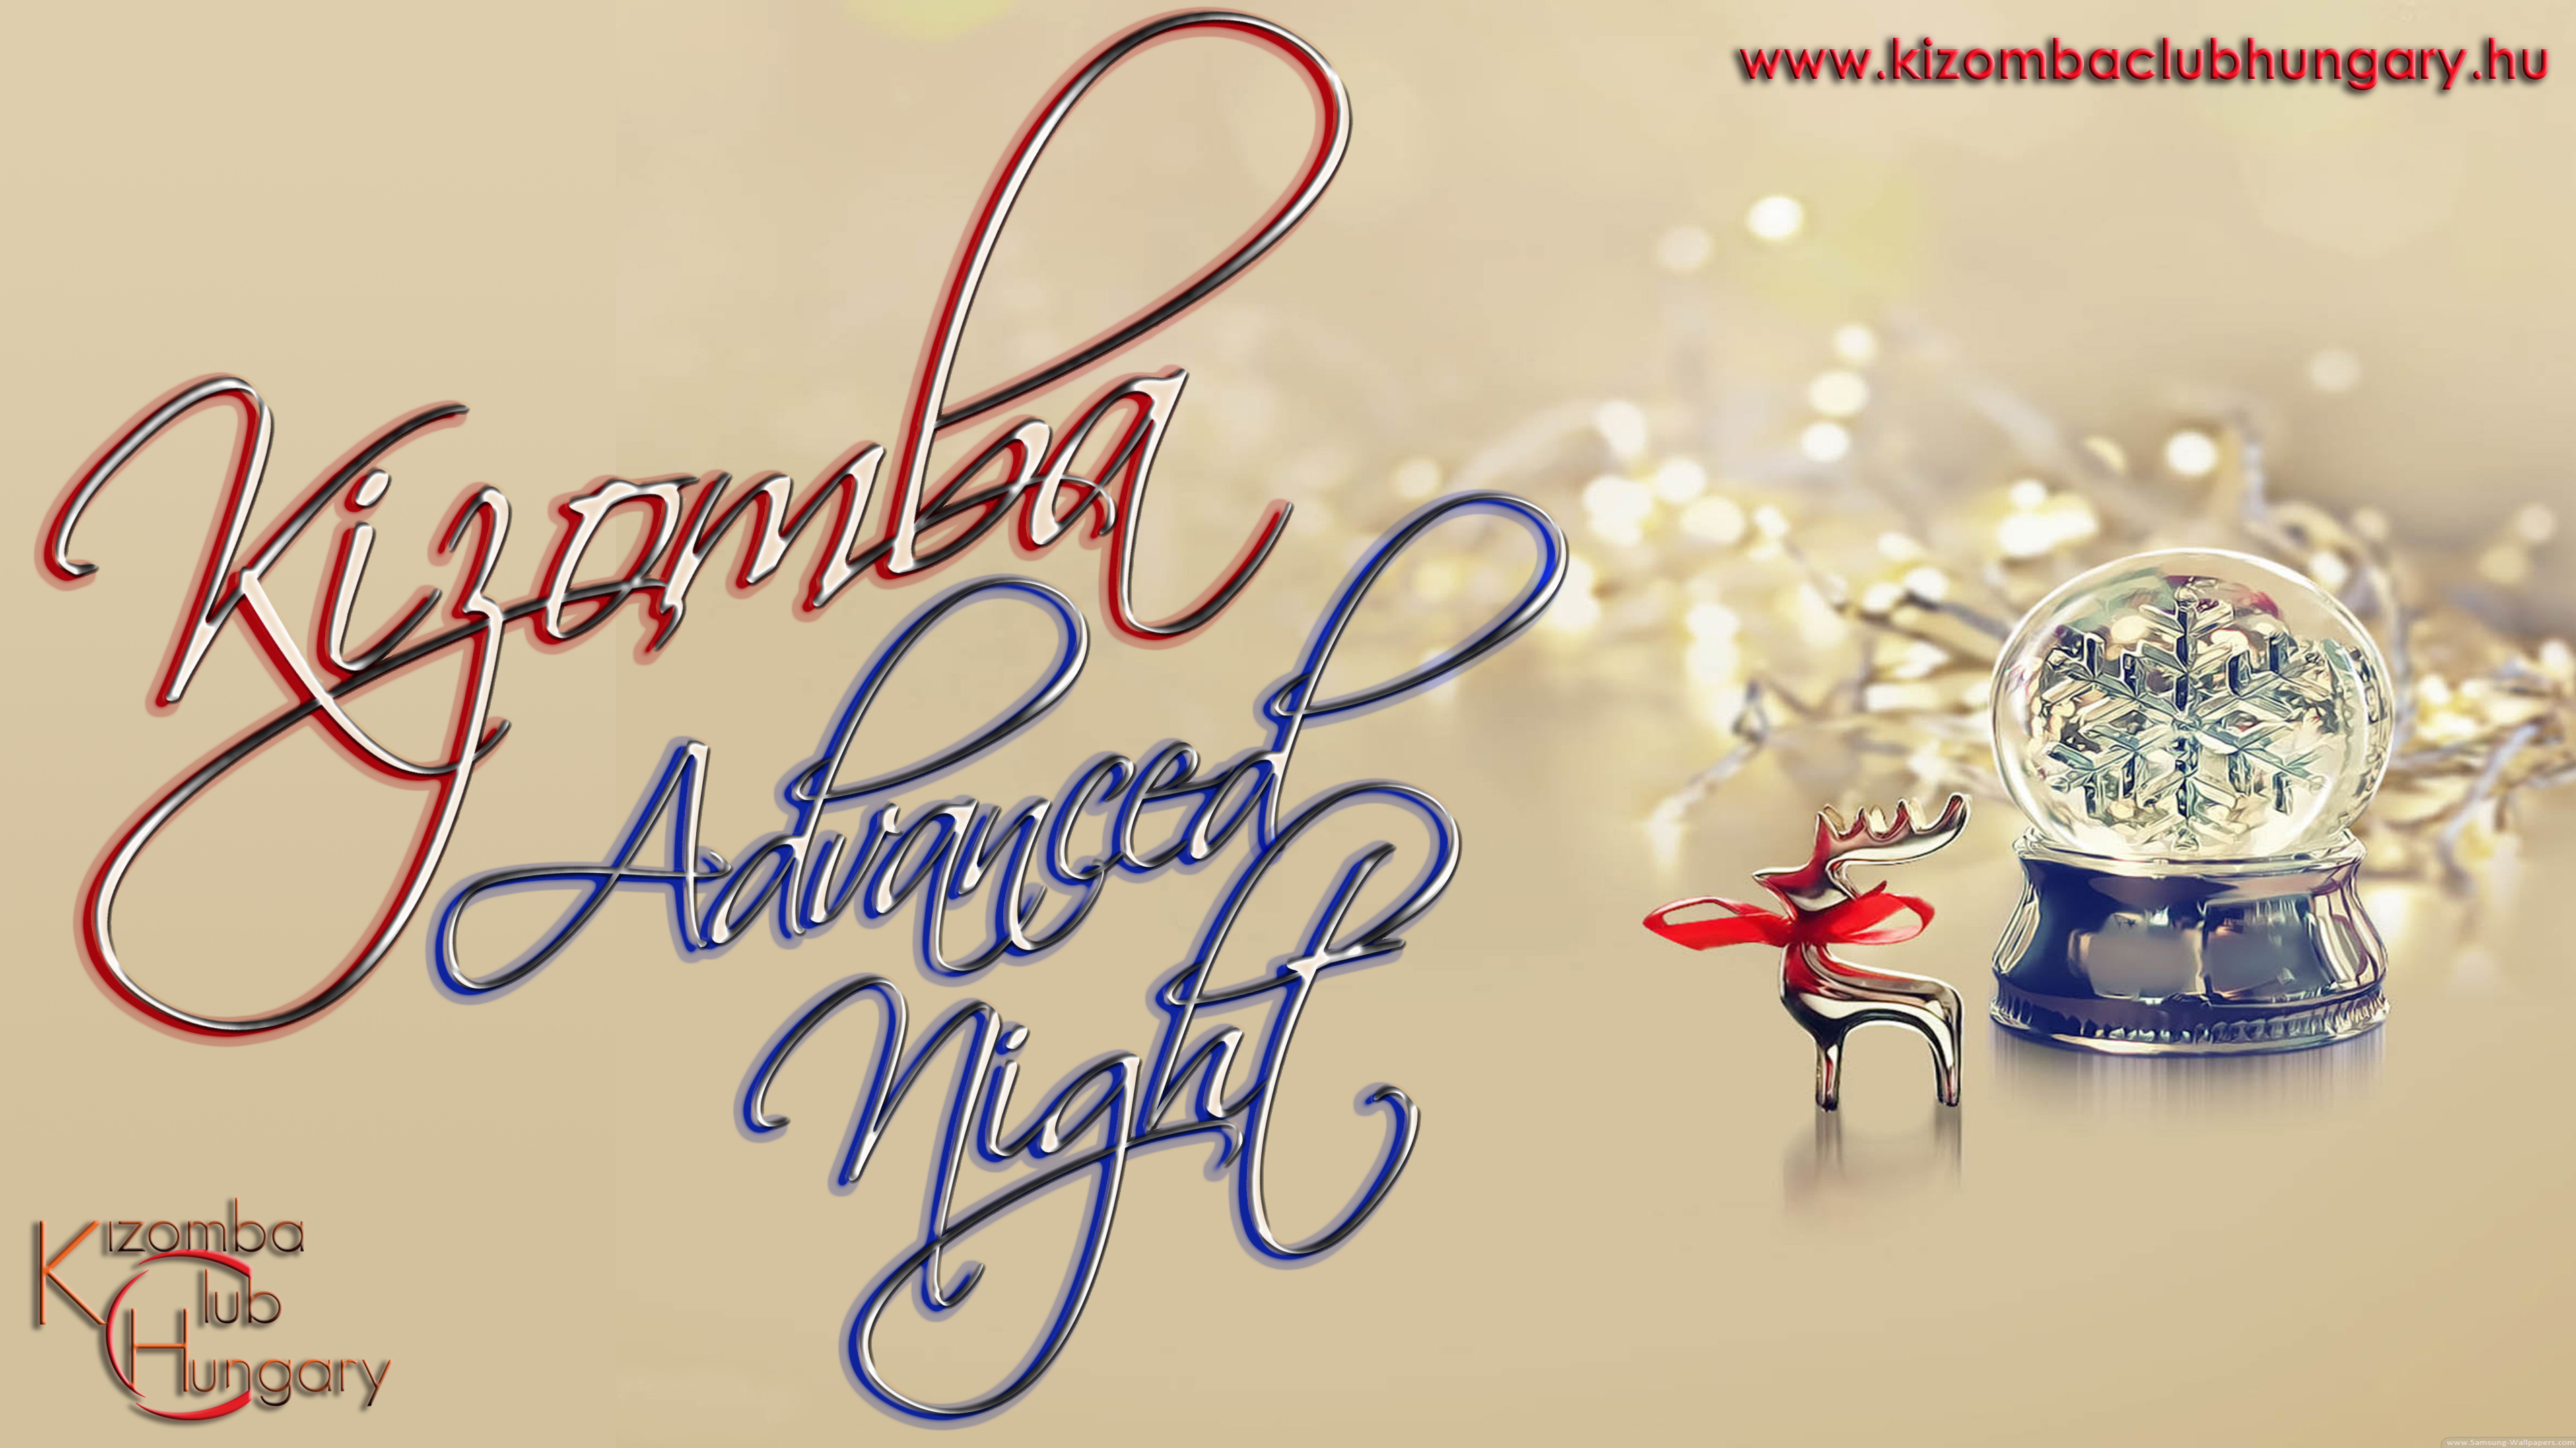 Kizomba Advanced Night - SensiKiz (CSÜTÖRTÖK 20.30-22.00) Mirávos